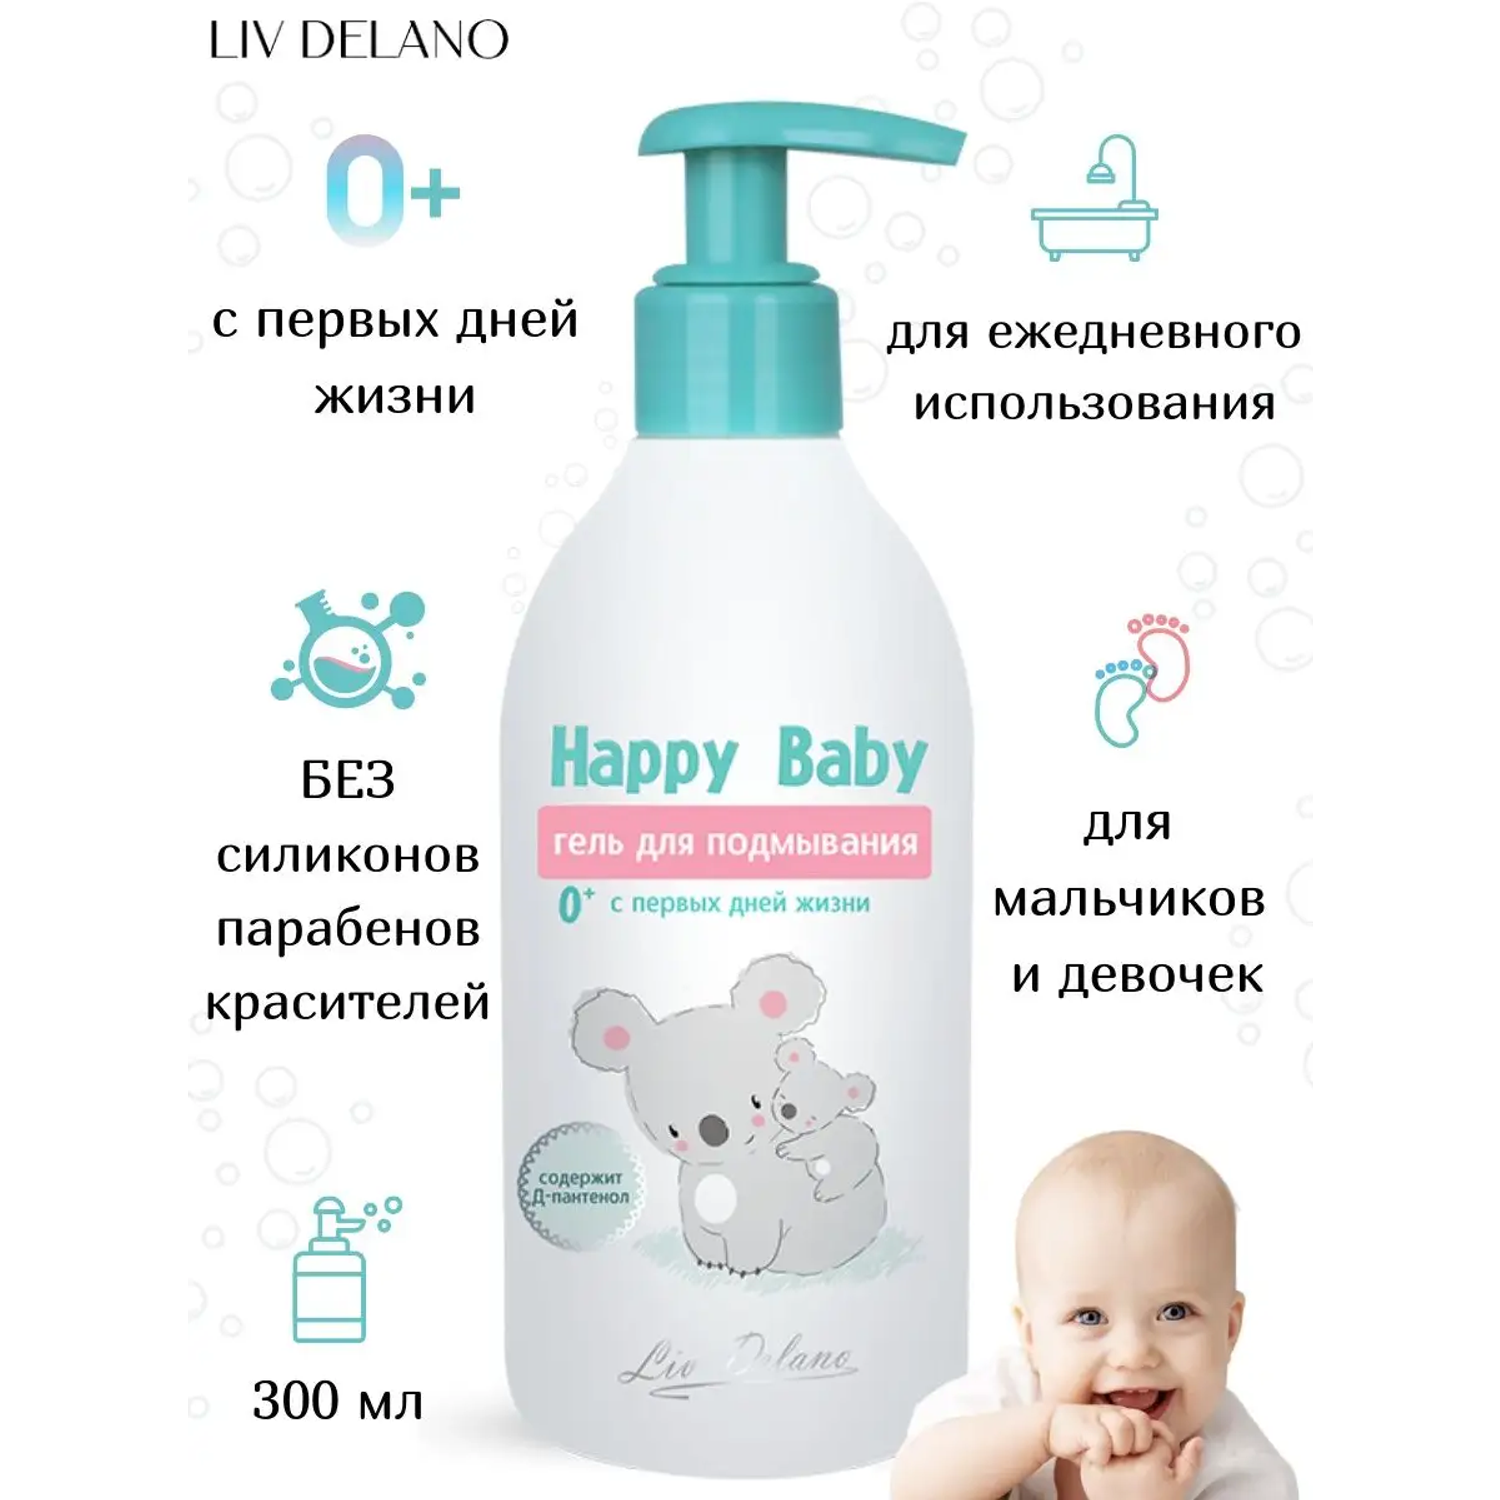 Гель для подмывания LIV DELANO Happy Baby С первых дней жизни 300 мл - фото 2